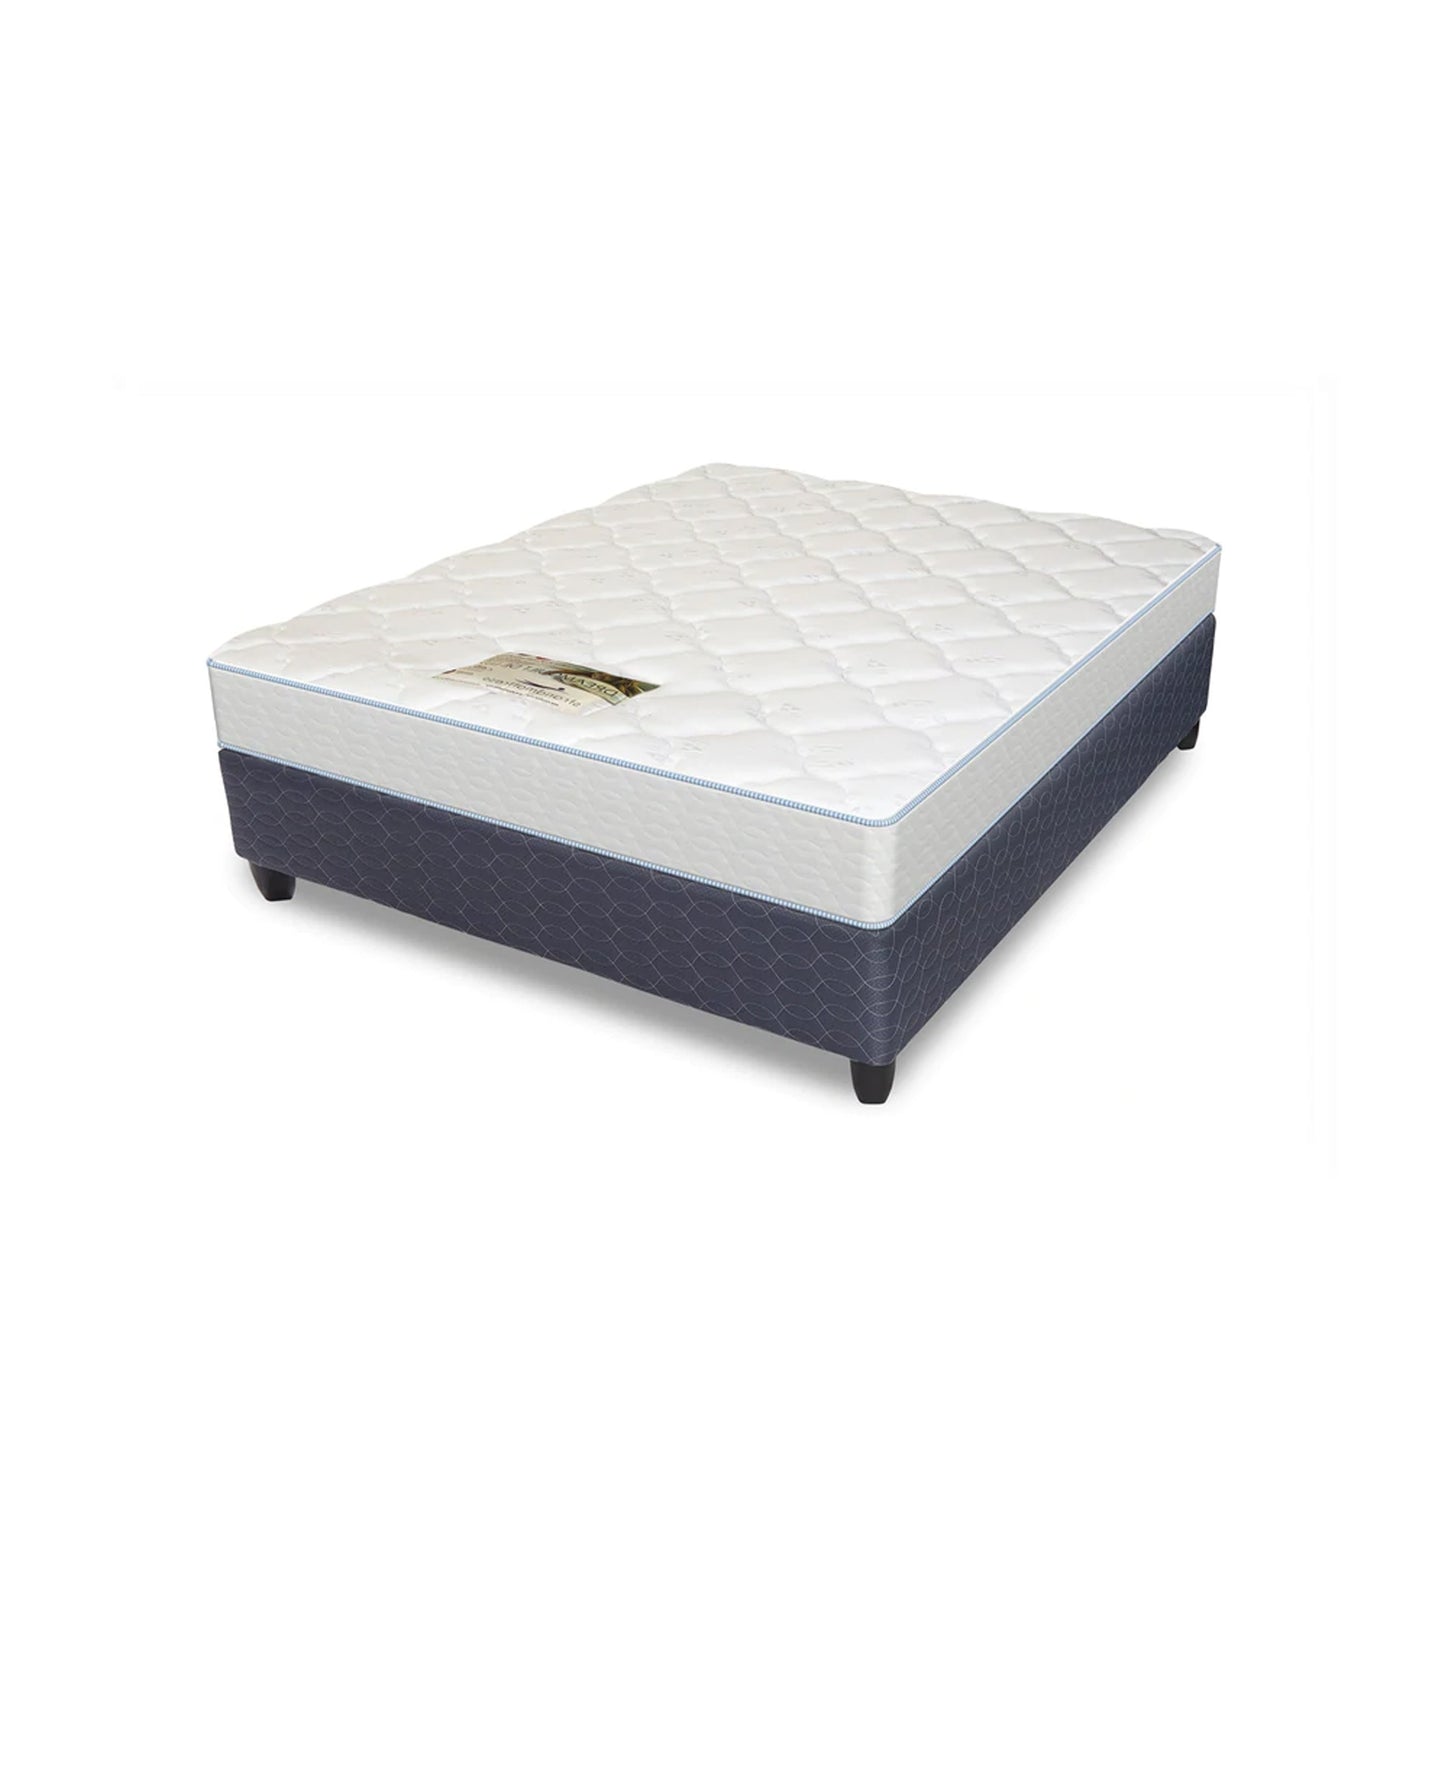 Strandmattress Dreamquilt  Bed